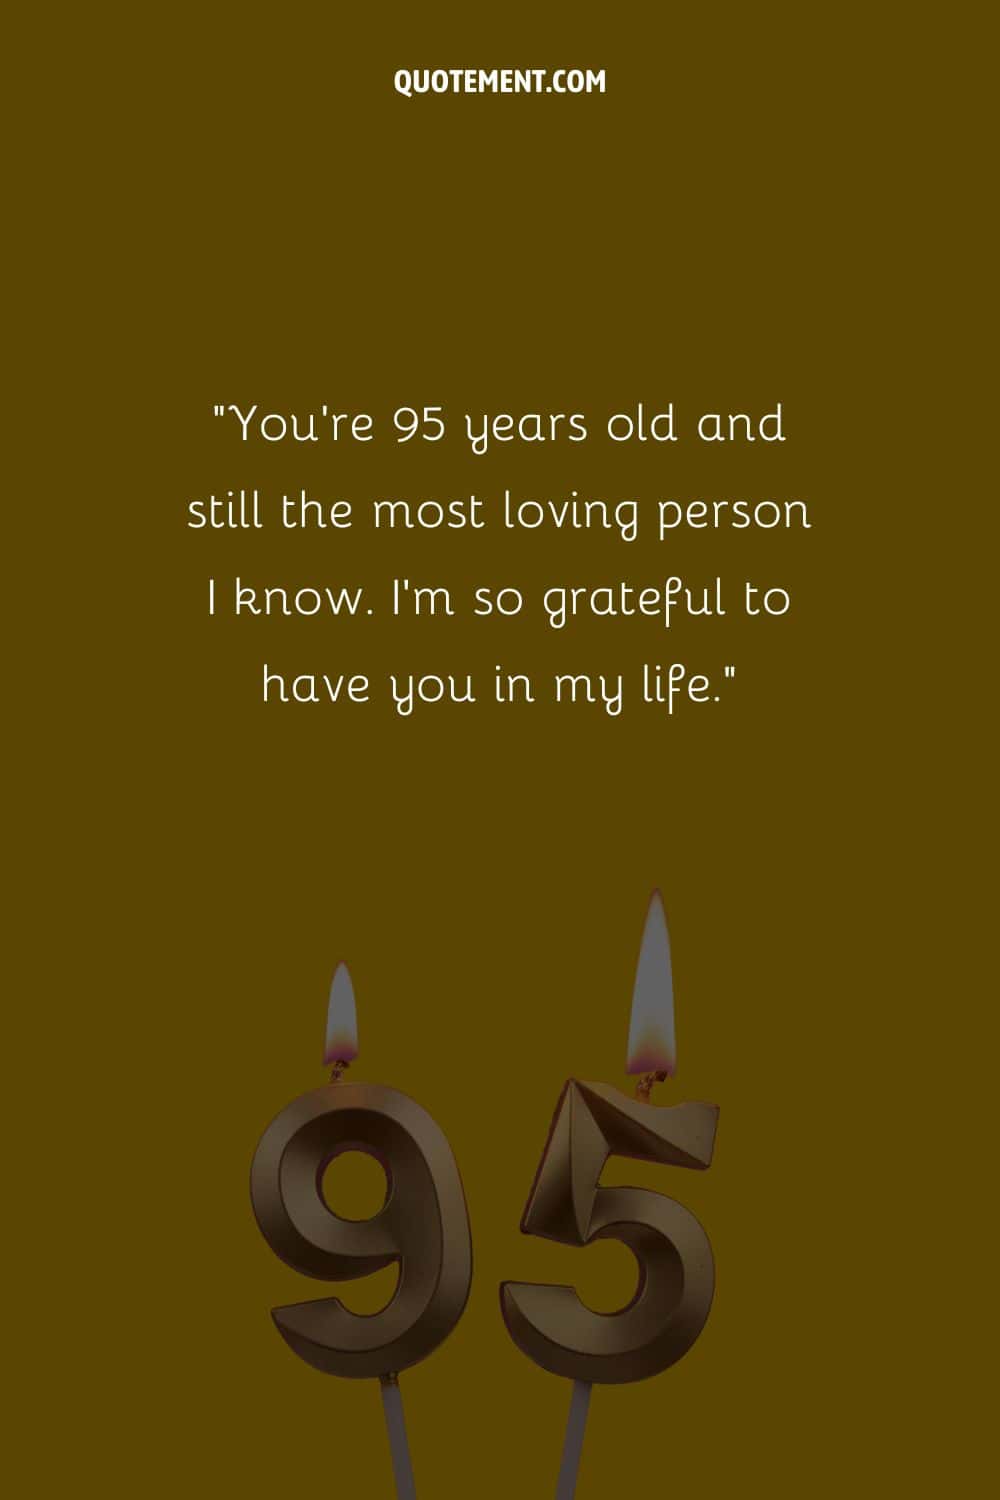 "Tienes 95 años y sigues siendo la persona más cariñosa que conozco. Estoy tan agradecida de tenerte en mi vida".